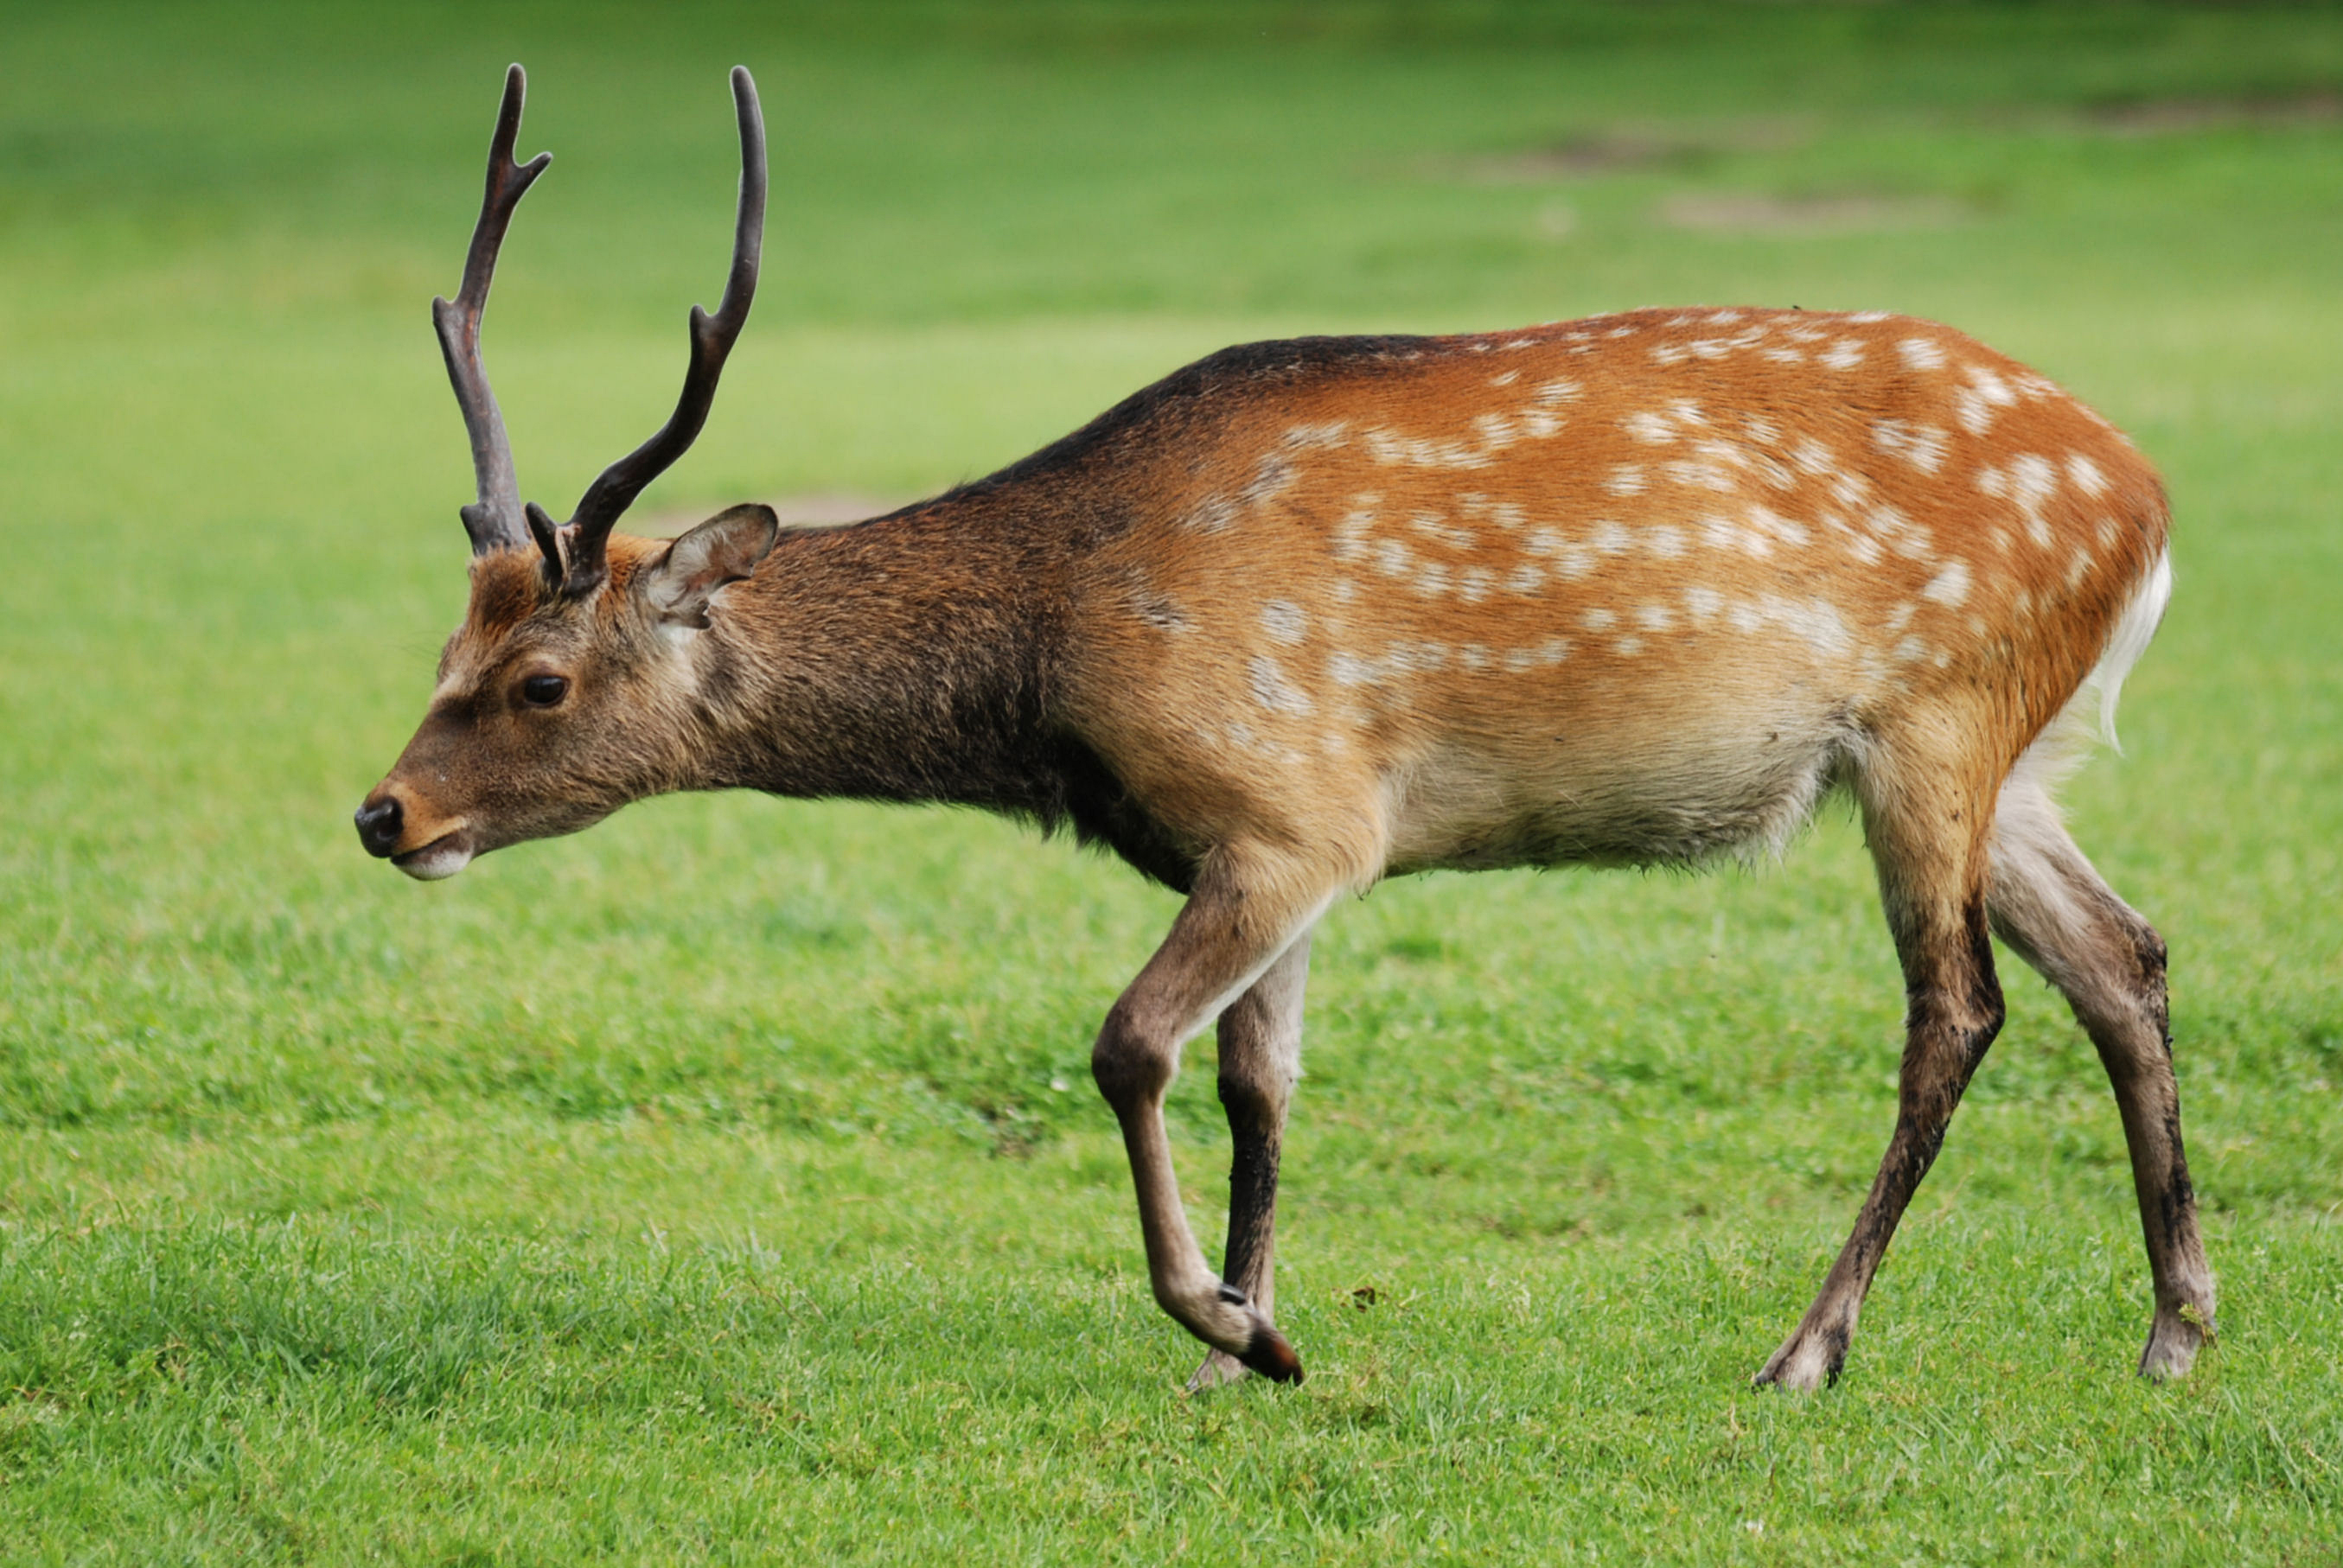 How big do sika deer antlers get?